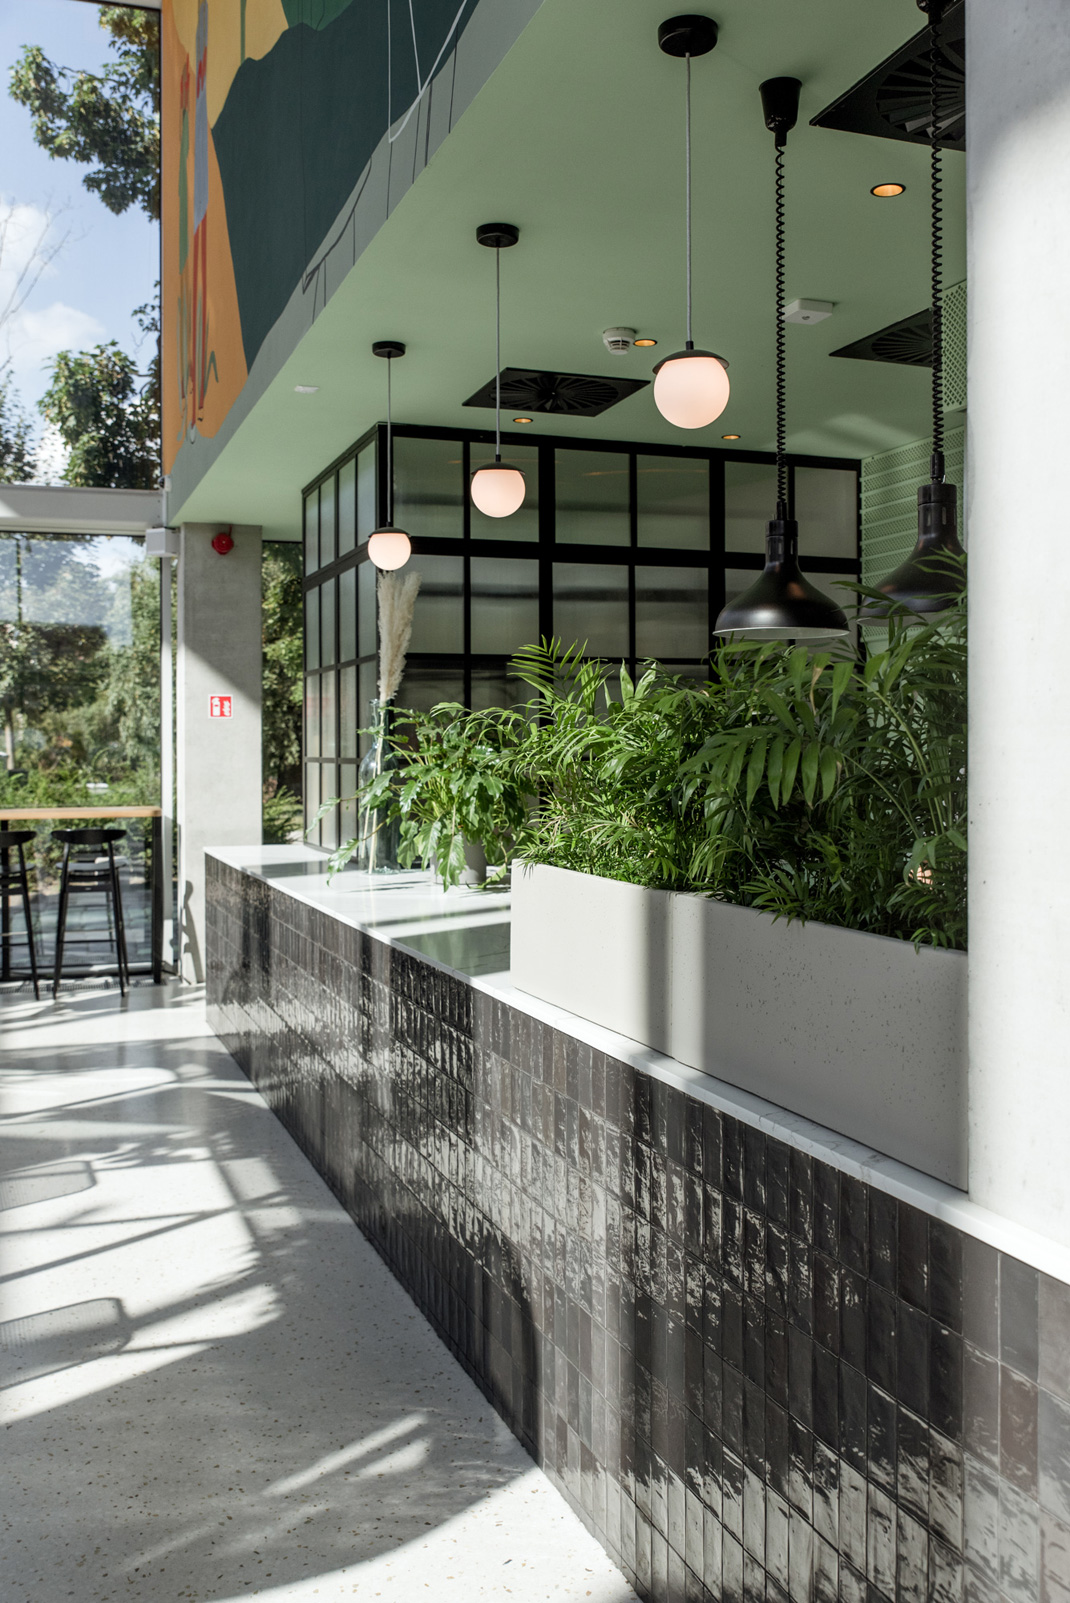 康科迪亚设计中心屋顶露台餐厅 波兰 露台 木材 金属 瓷砖 涂料 logo设计 vi设计 空间设计